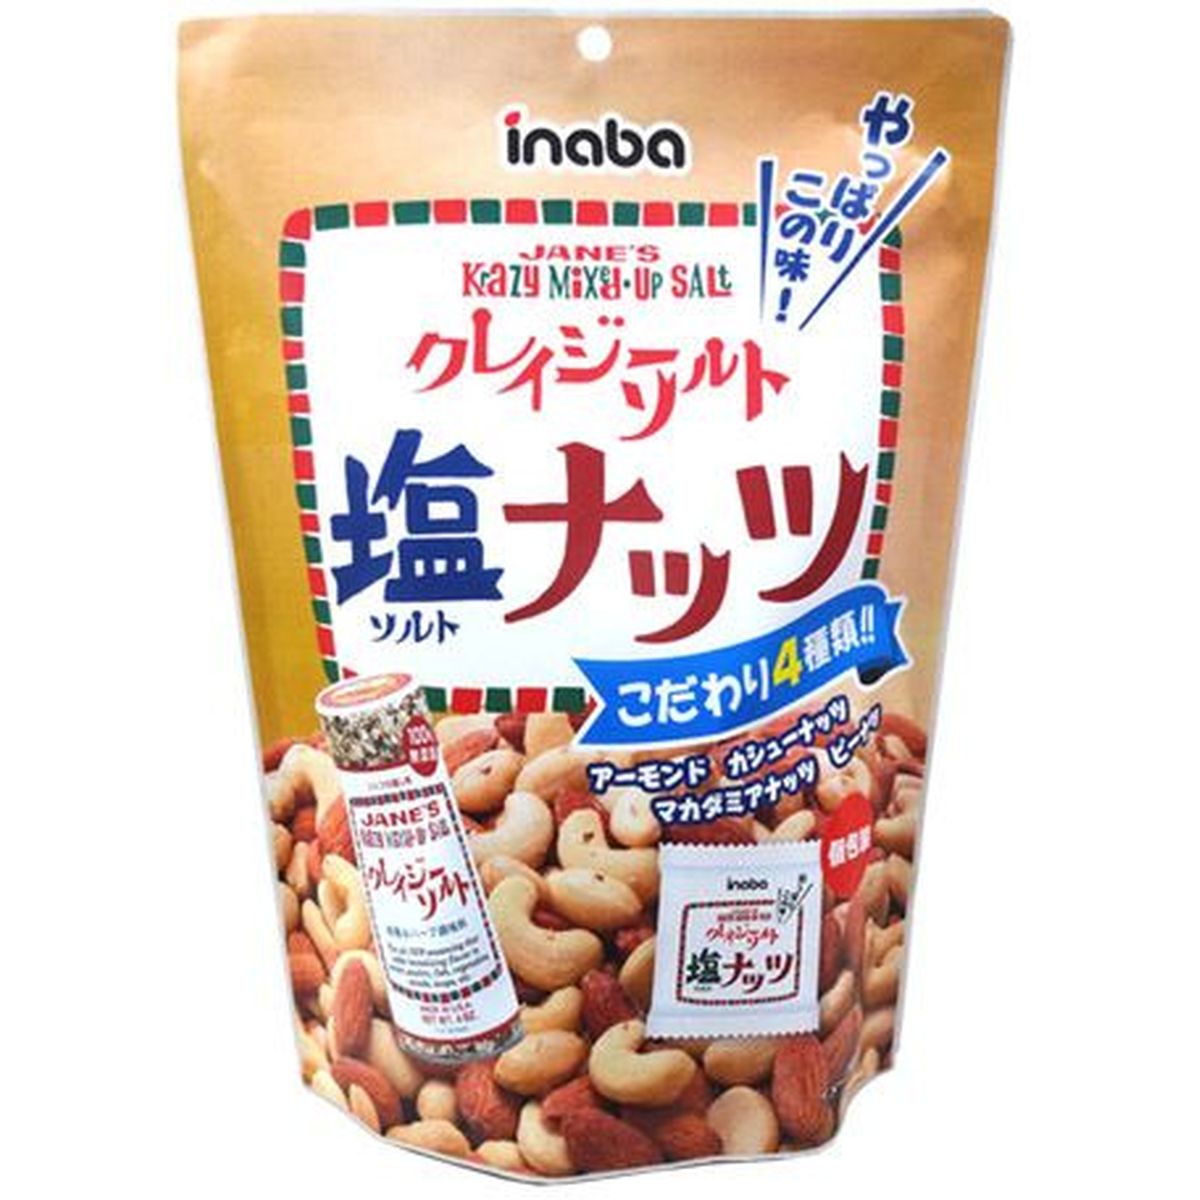 【12個入リ】稲葉ピーナツク クレイジーソルトナッツ 個包装 140g